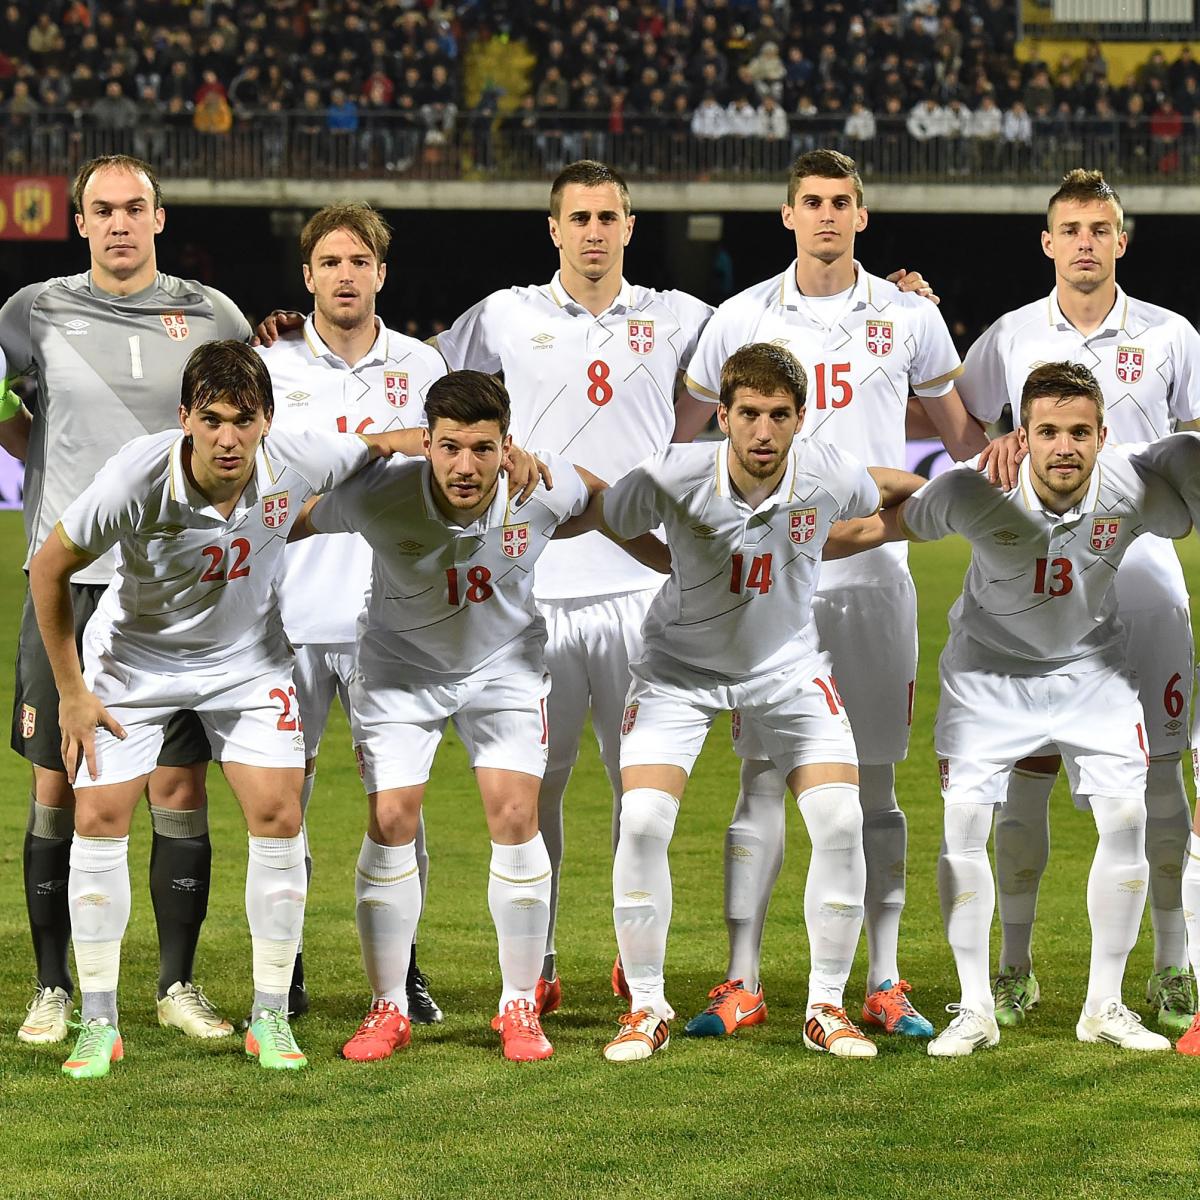 塞尔维亚国家男子足球队比分,世界杯,米兰,卡纳瓦罗